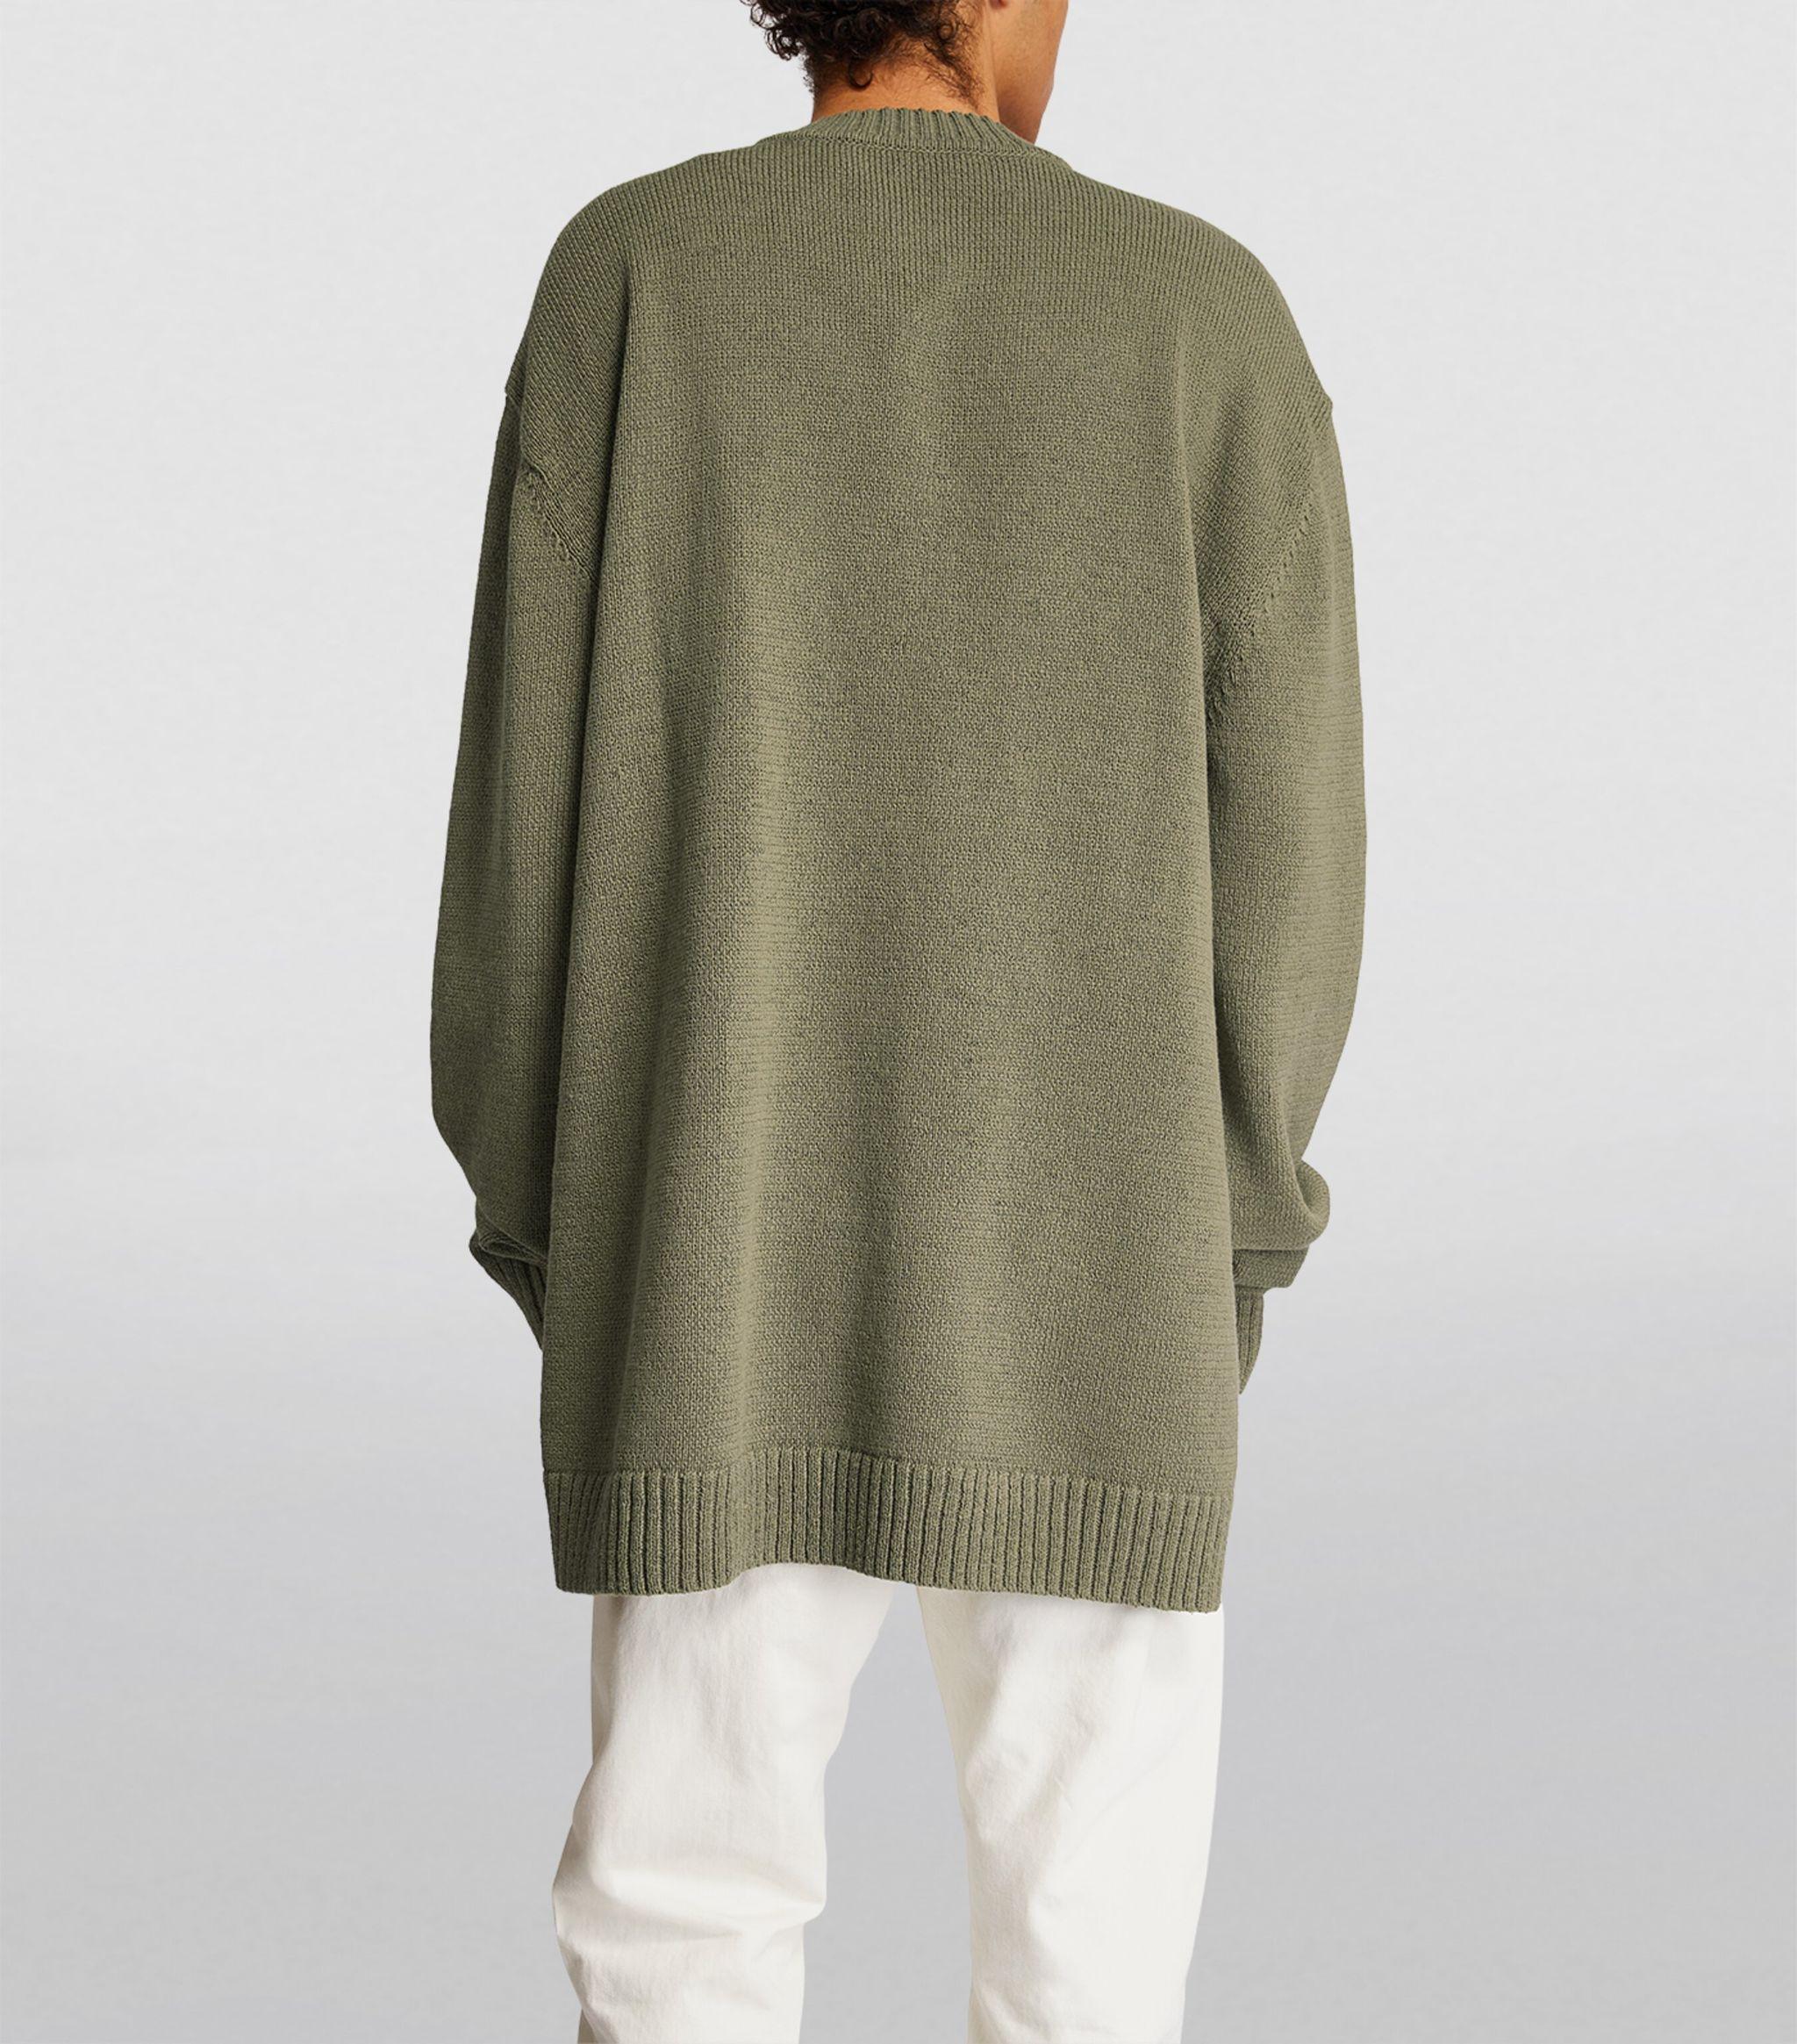 Craig Green Green Grate Sweater